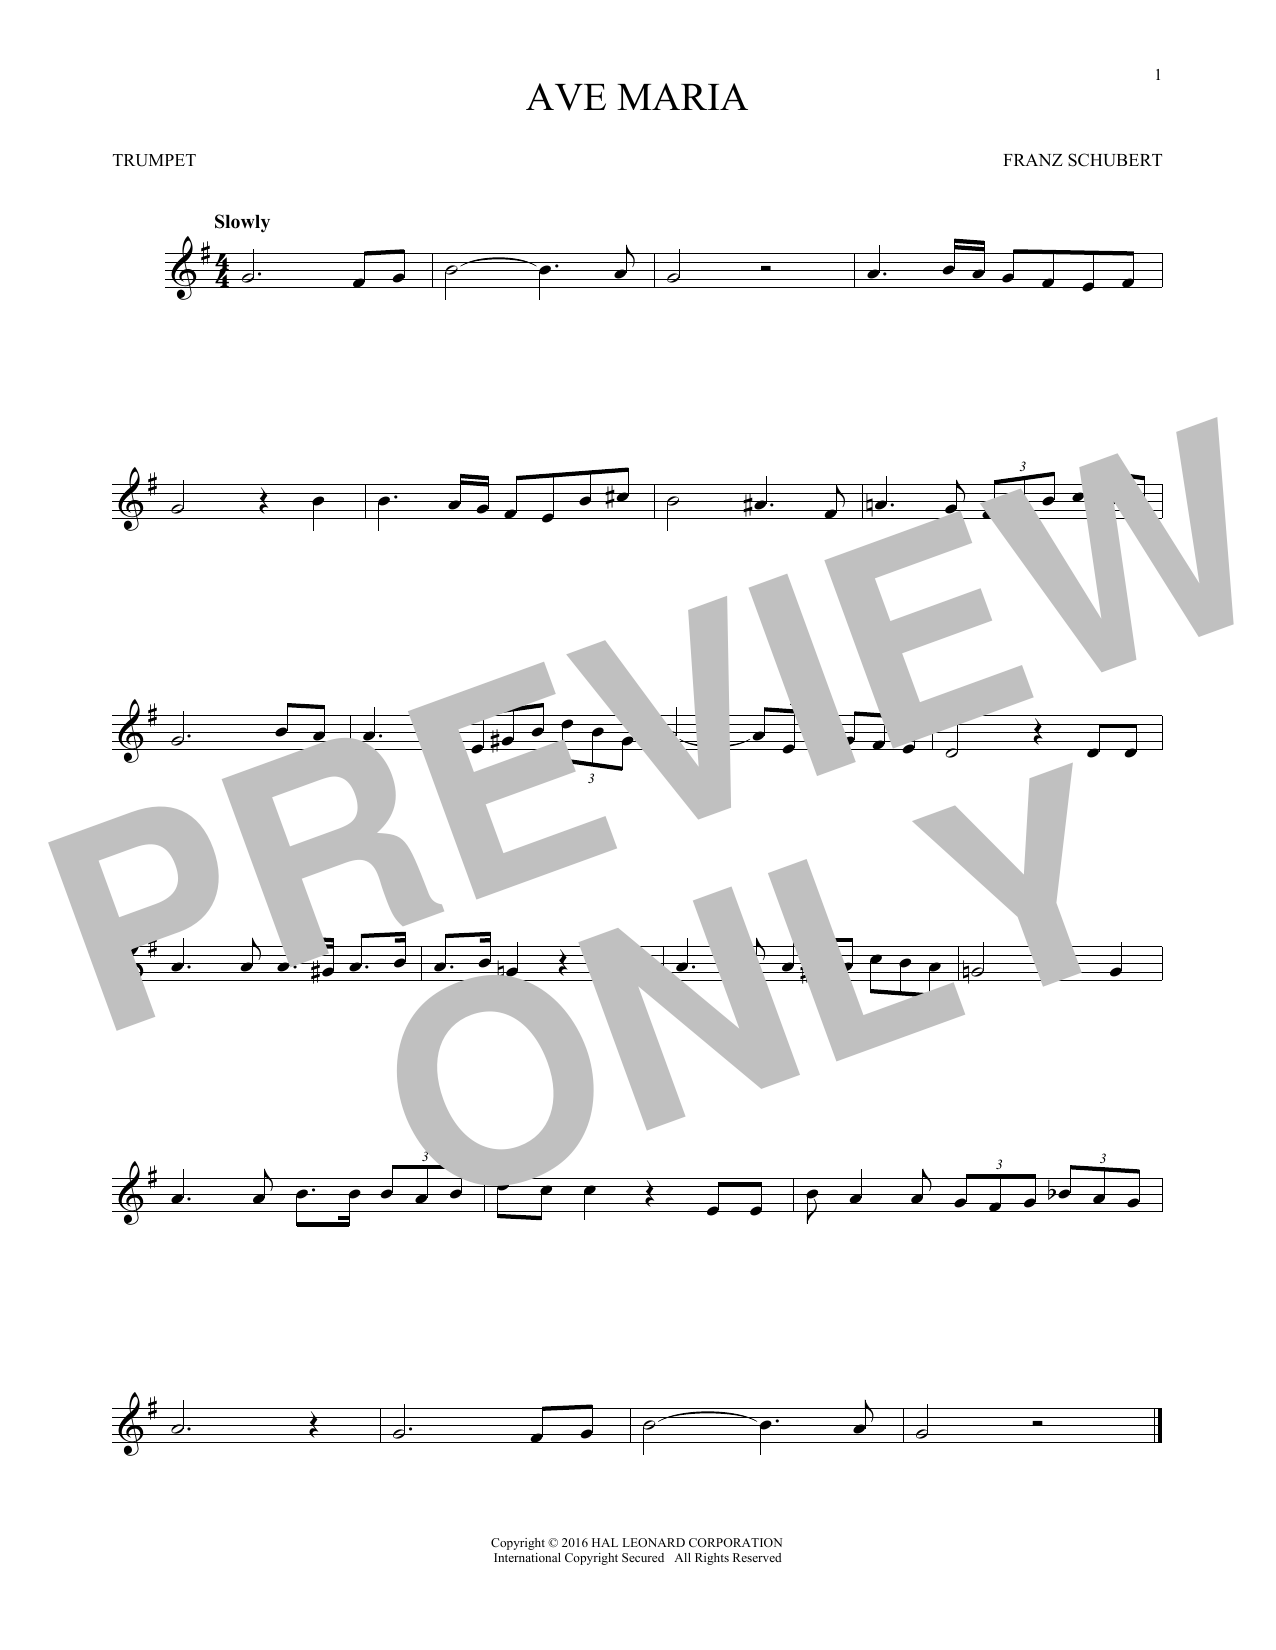 Ave Maria, Op. 52, No. 6 (Trumpet Solo) von Franz Schubert